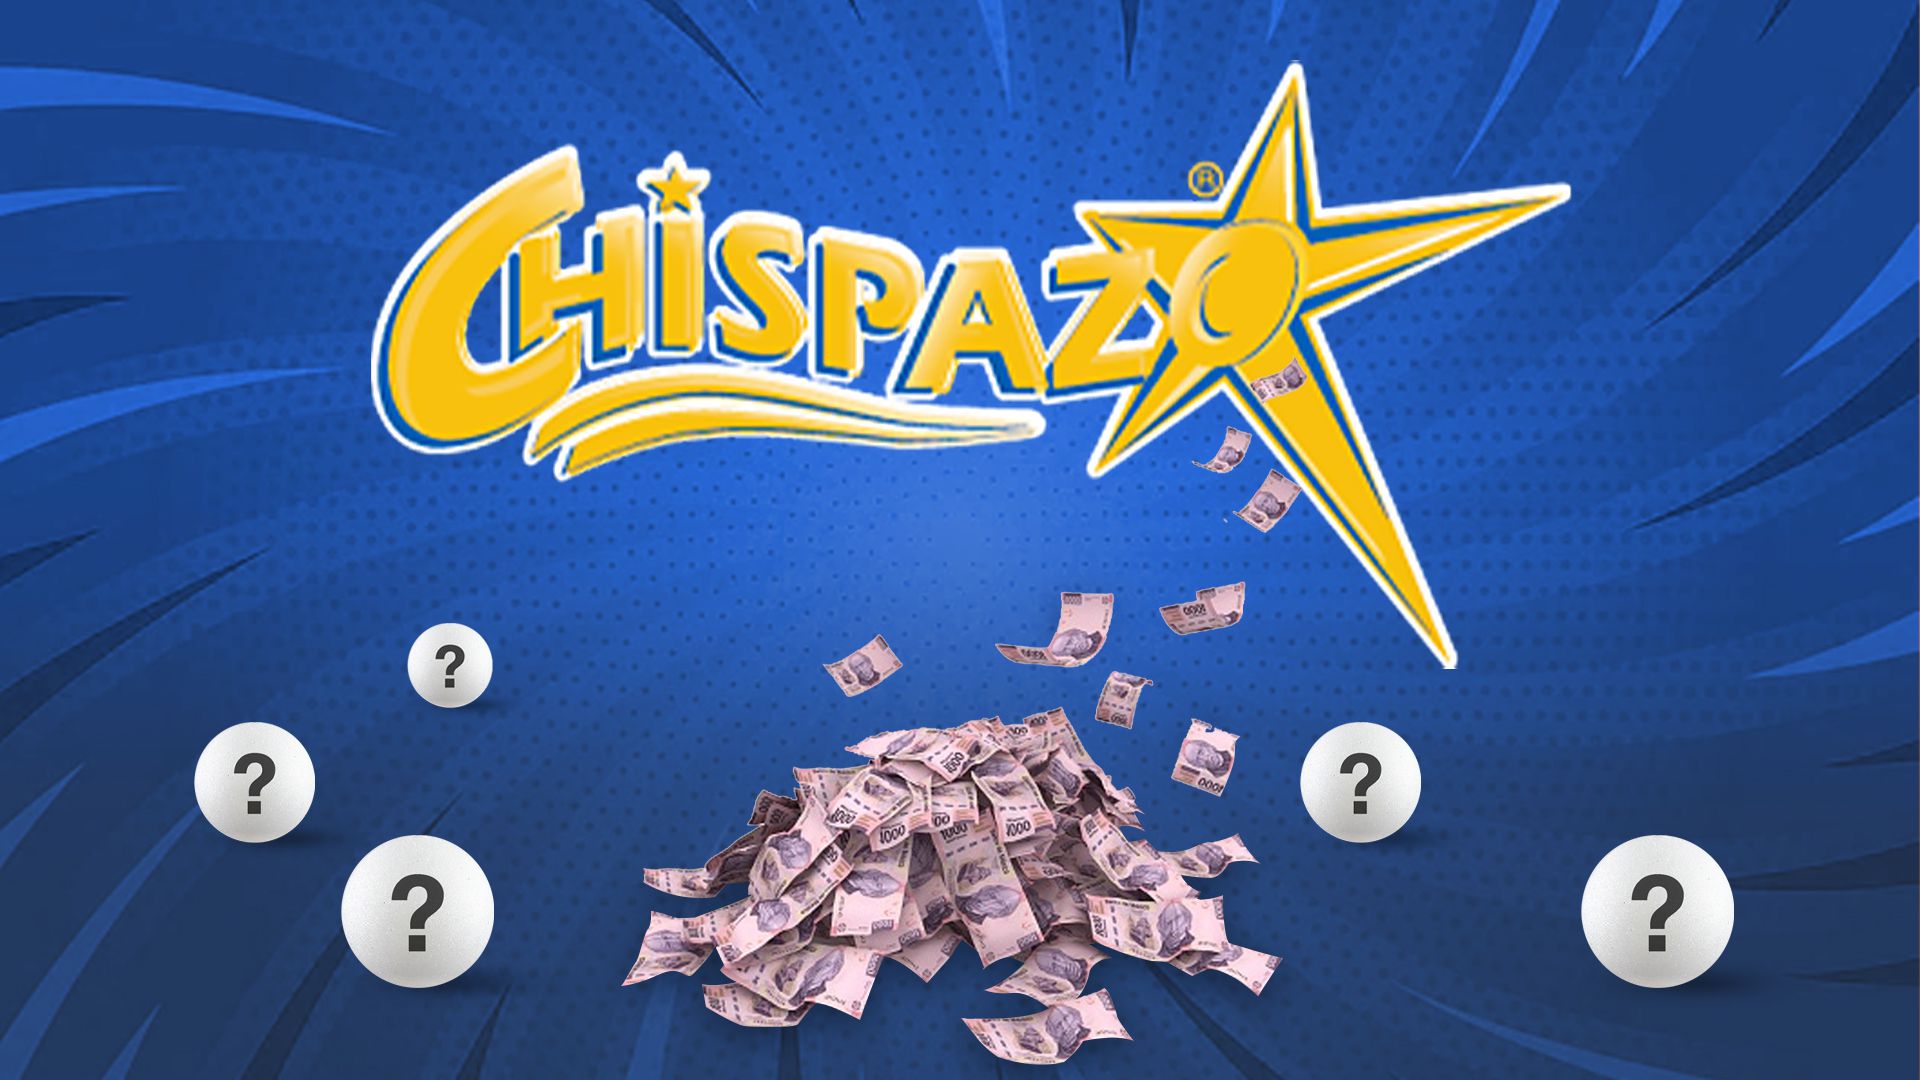 En el sorteo de hoy, Chipazo entregó $763,191.70 pesos (Infobae/Jovani Pérez)